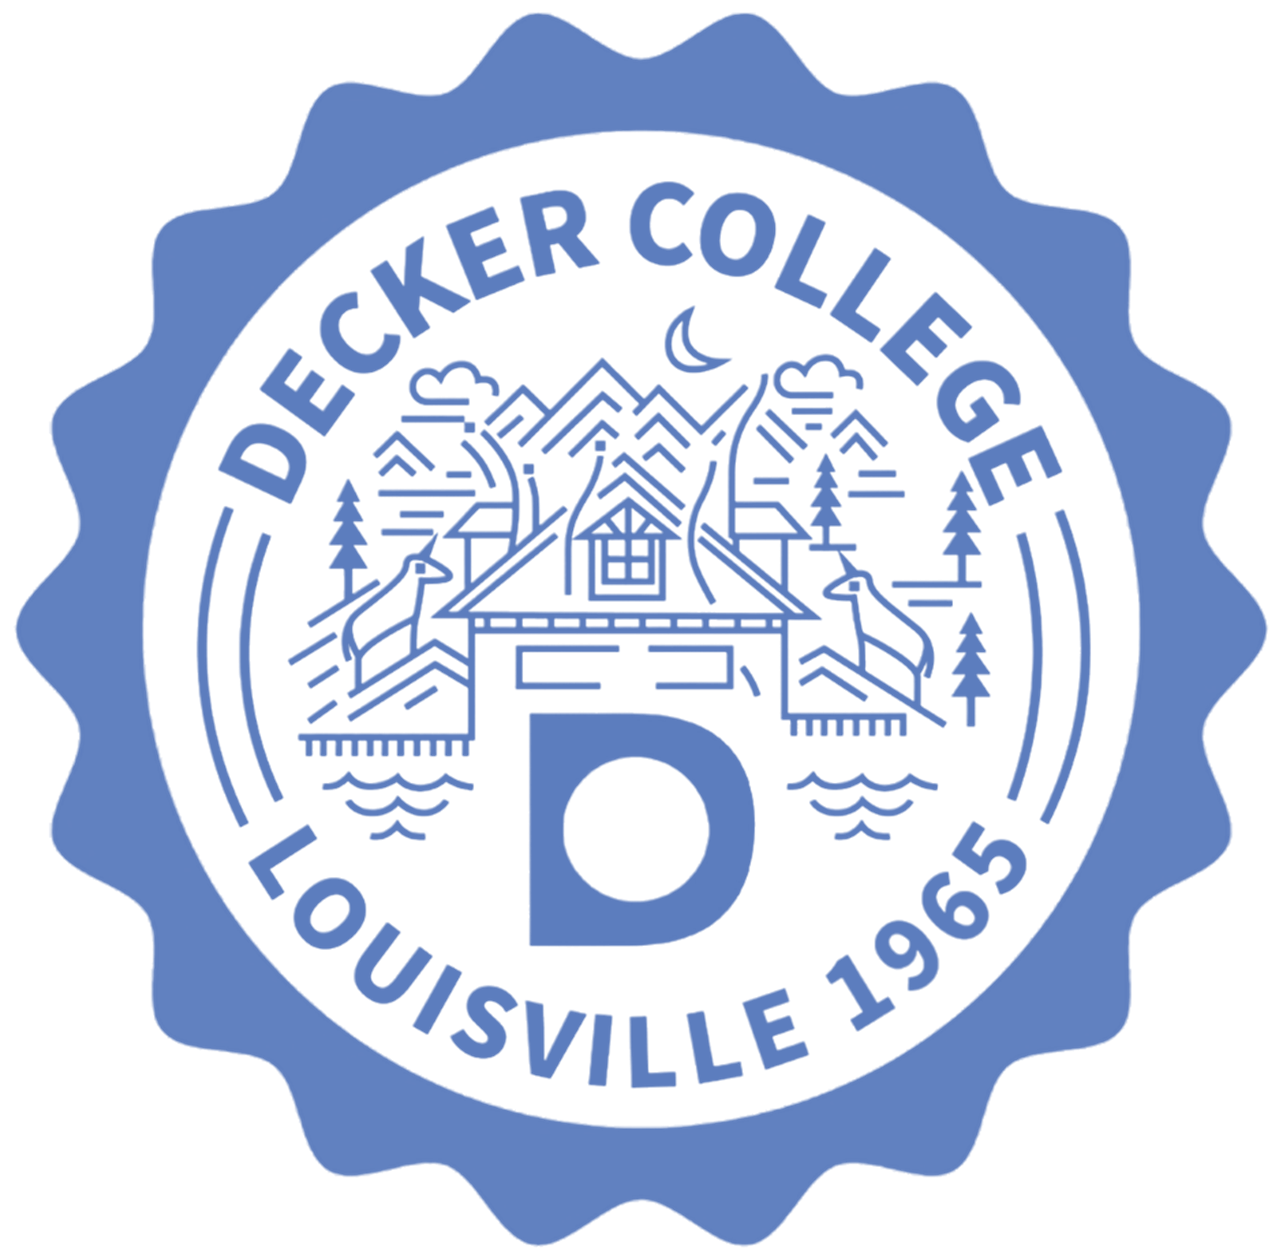 Decker College